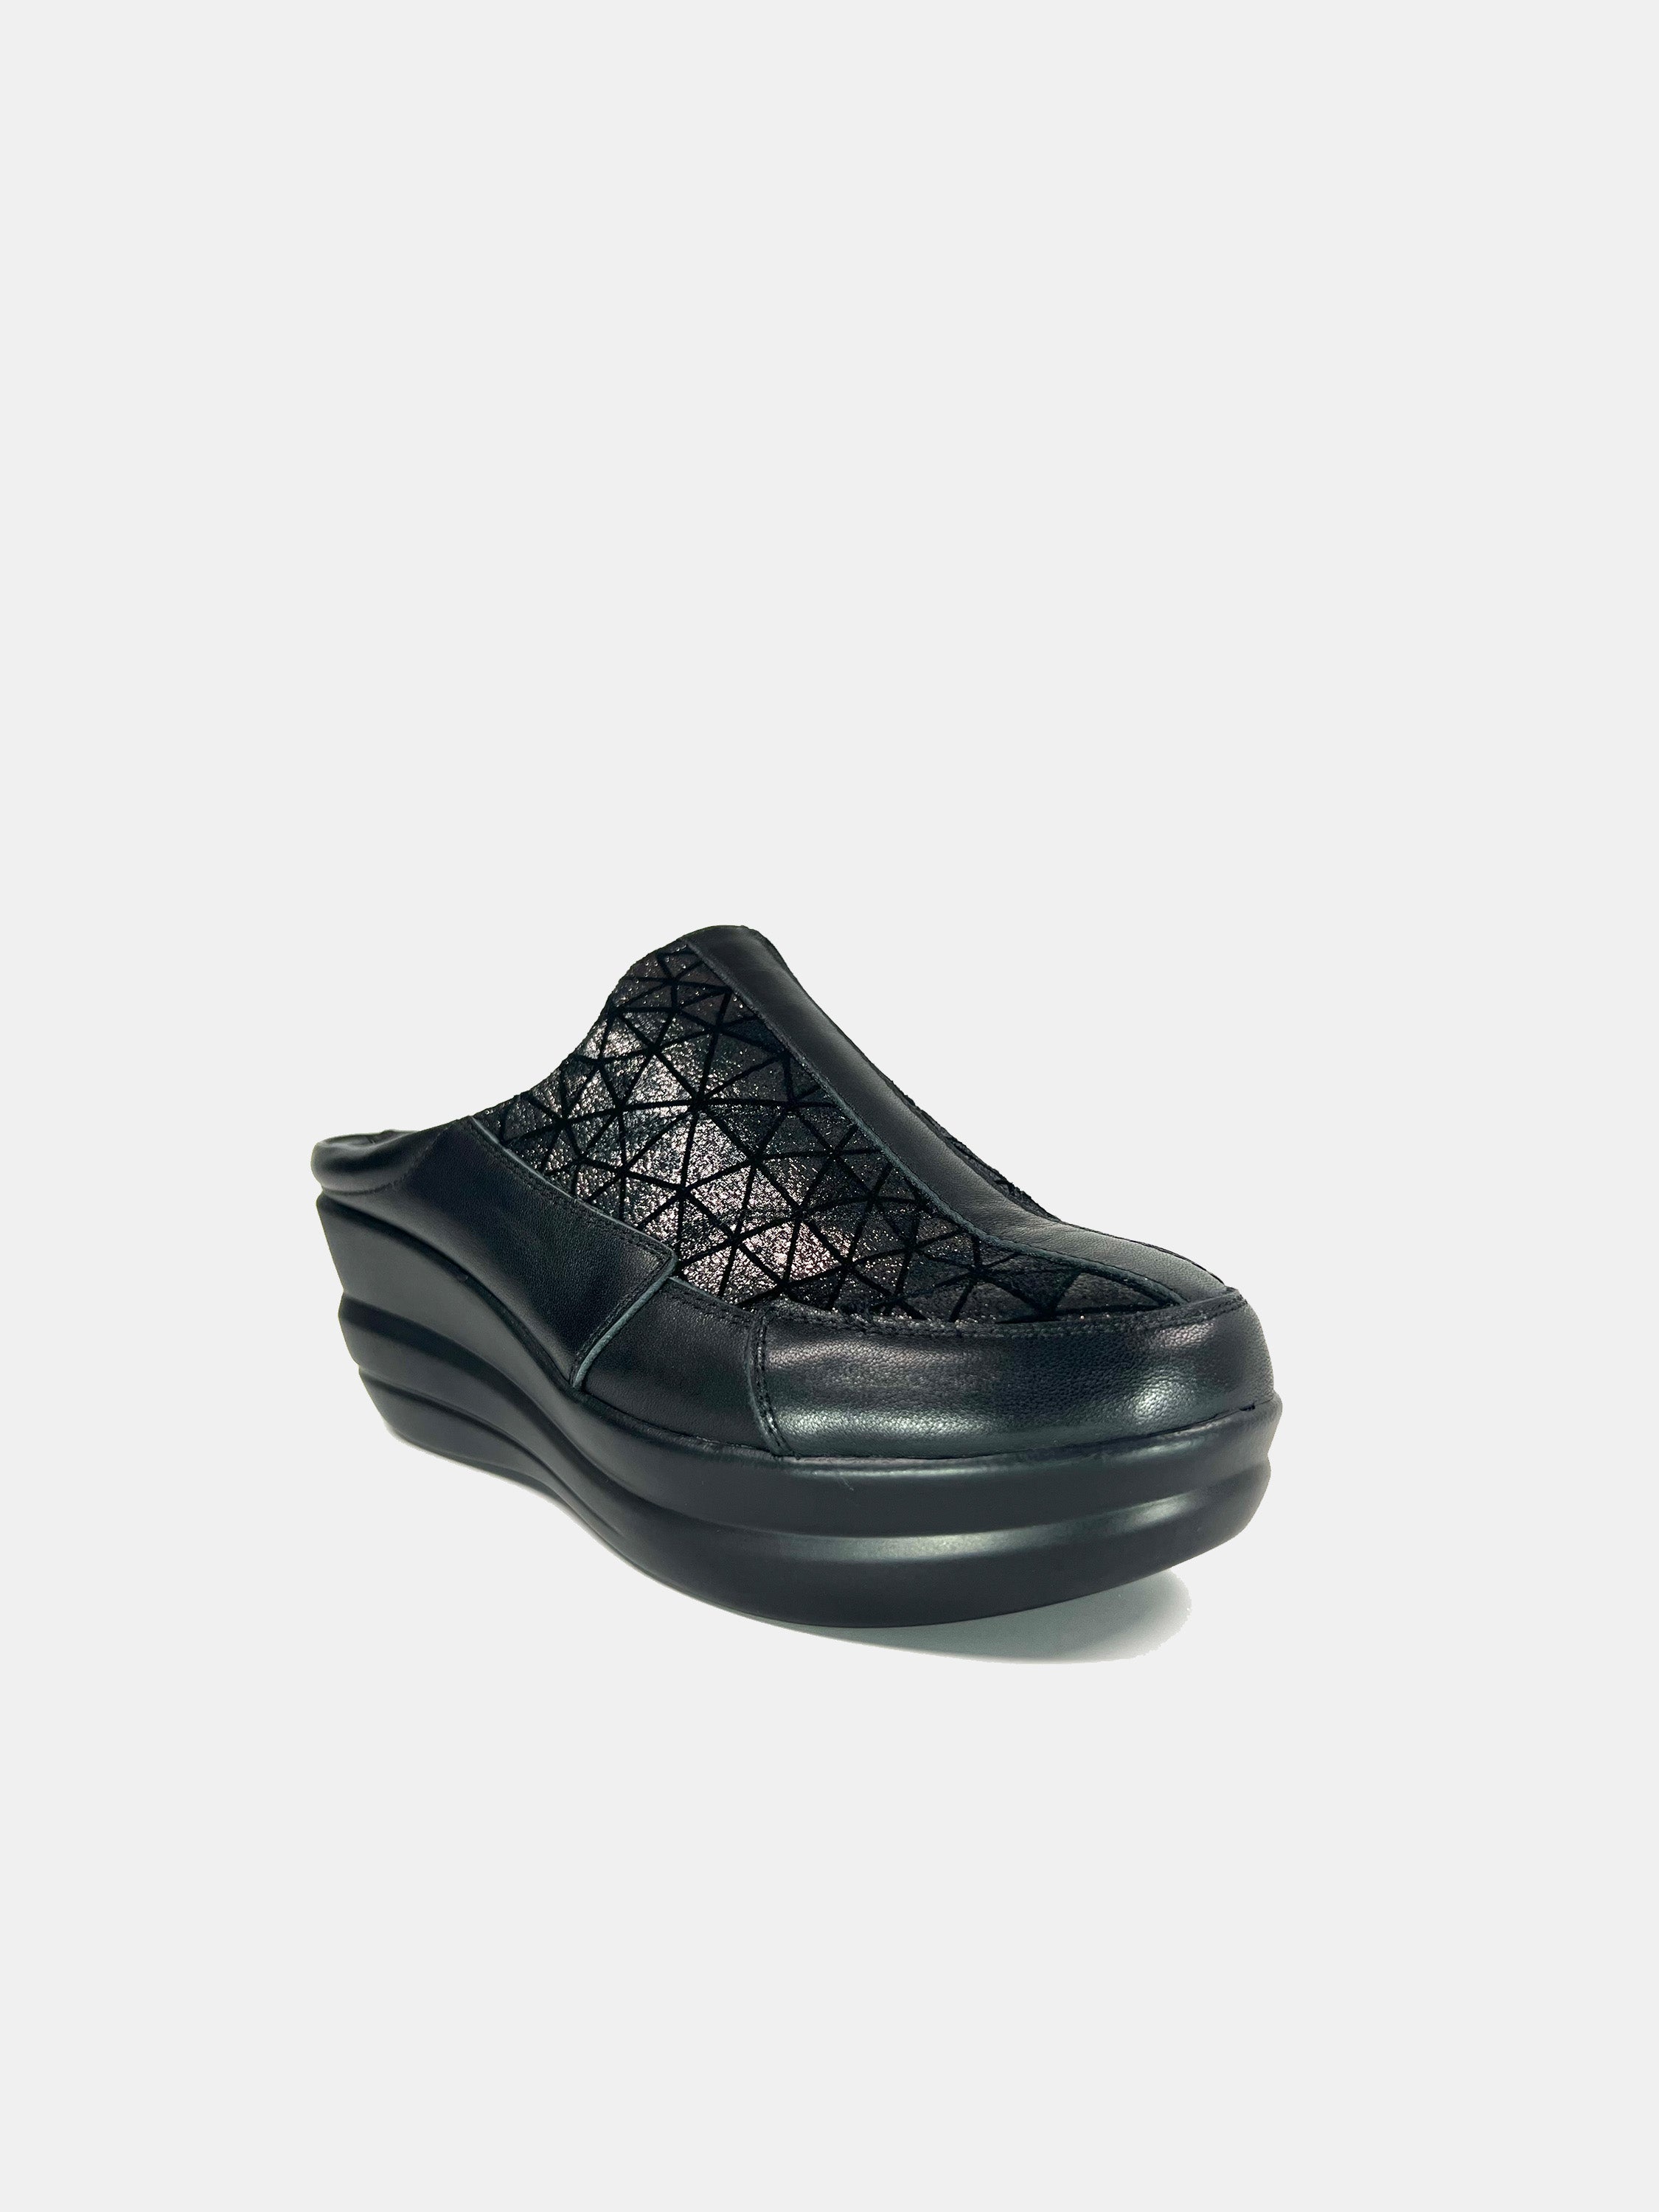 Michelle Morgan 19009-B1 Women's Mule Shoes #color_Black